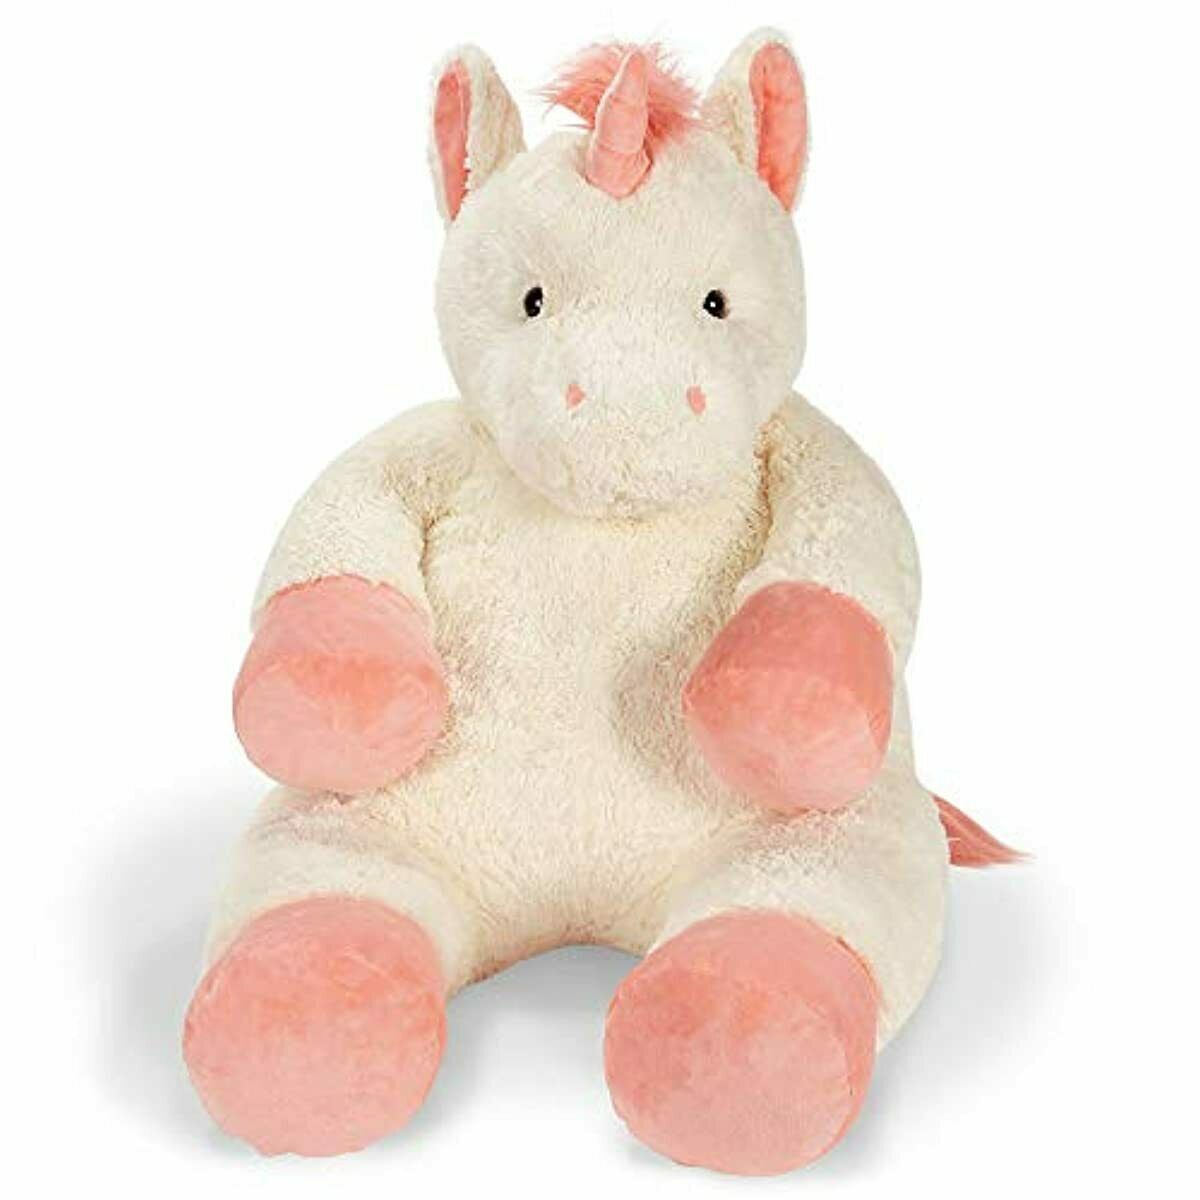 Giant Unicorn Animal Plush Large Kid Girl Lifesize Soft Huggable Stuffed Toy 4ft